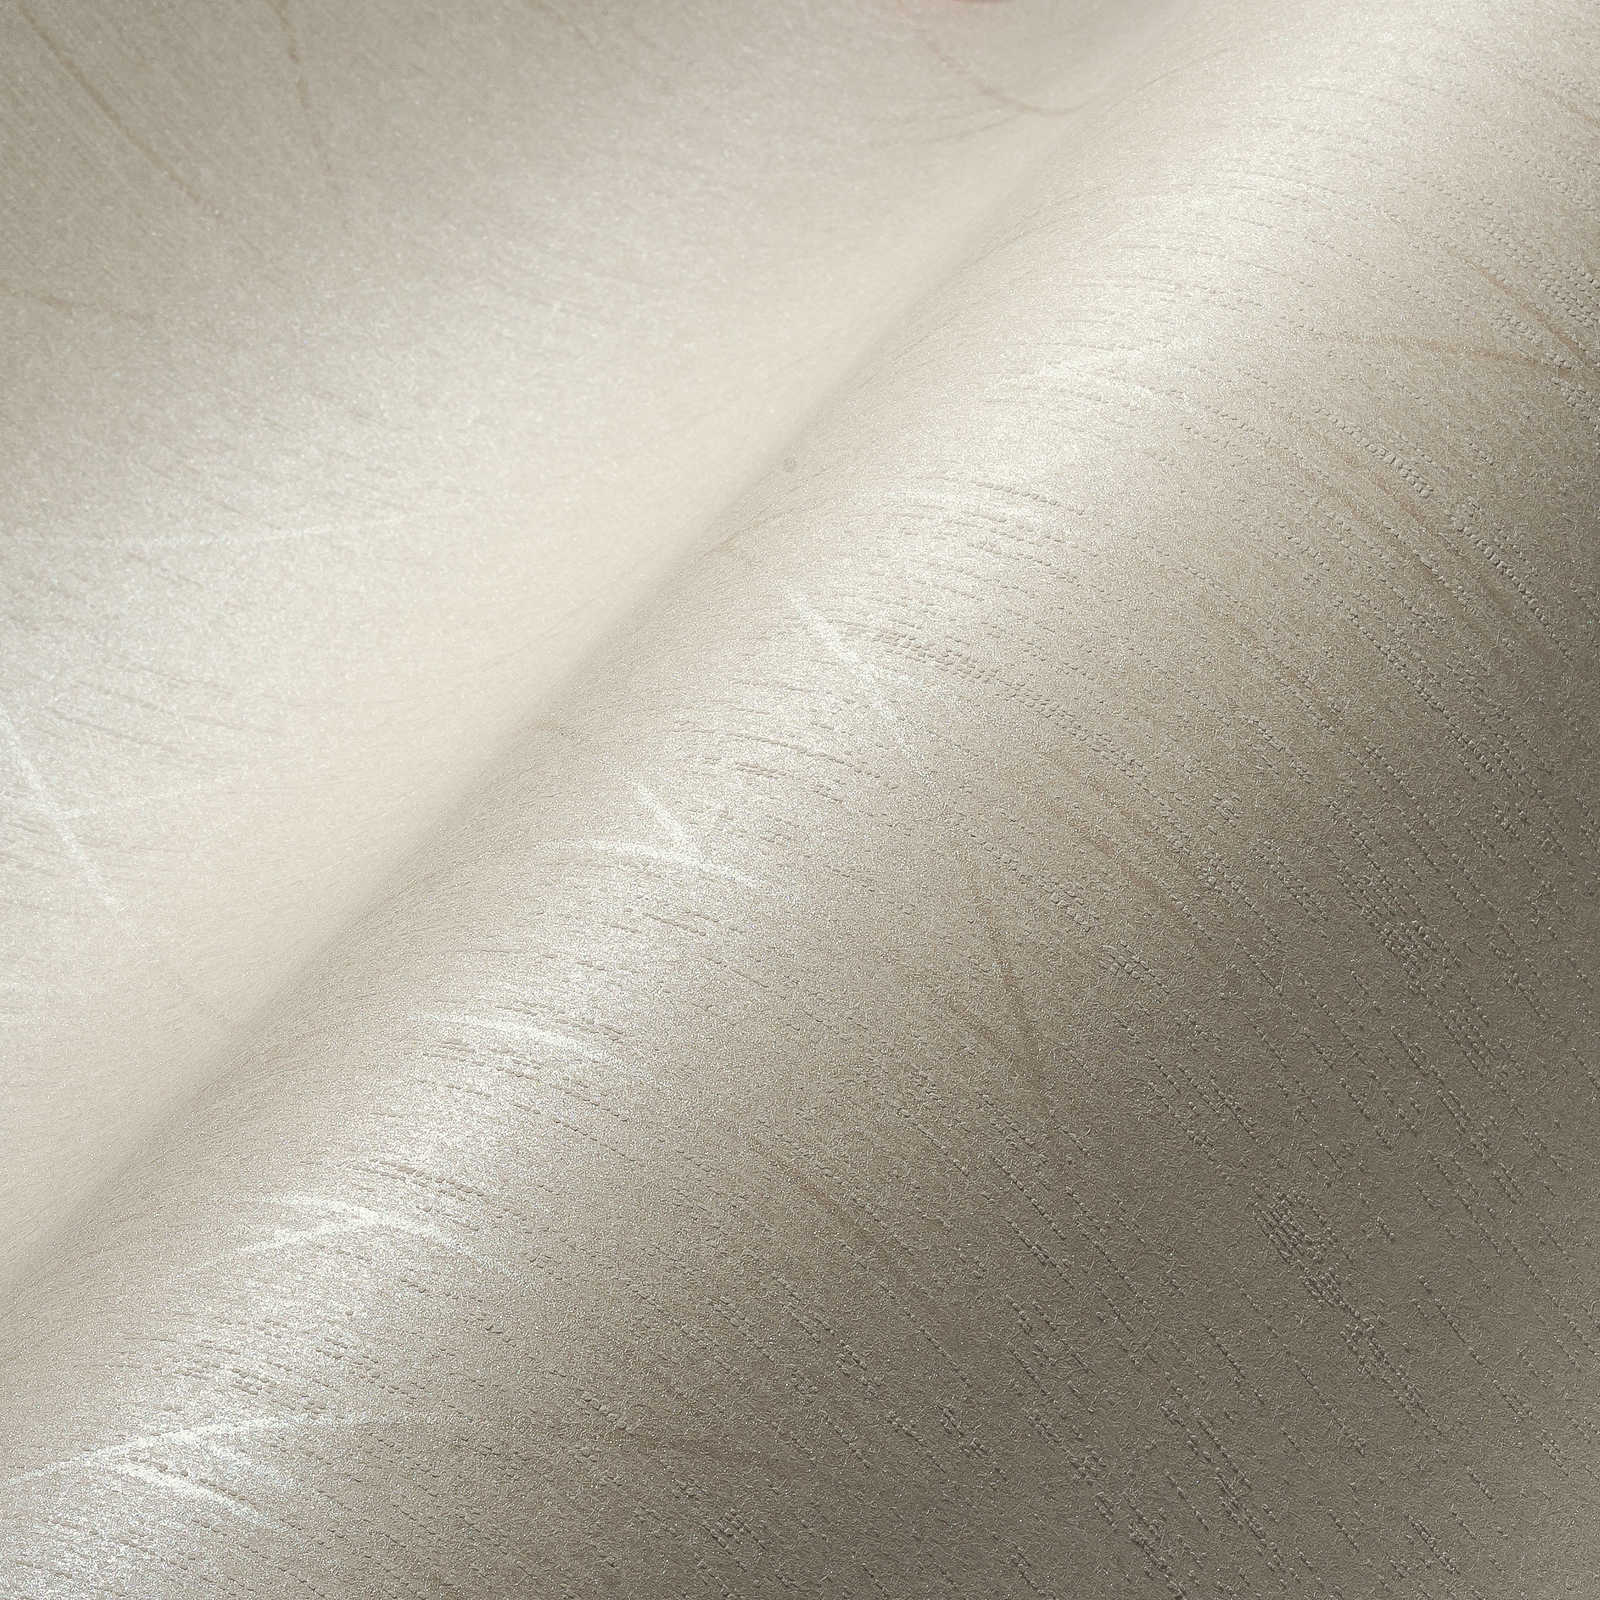             Vliesbehang met glinsterend glanseffect & grafisch patroon - wit
        